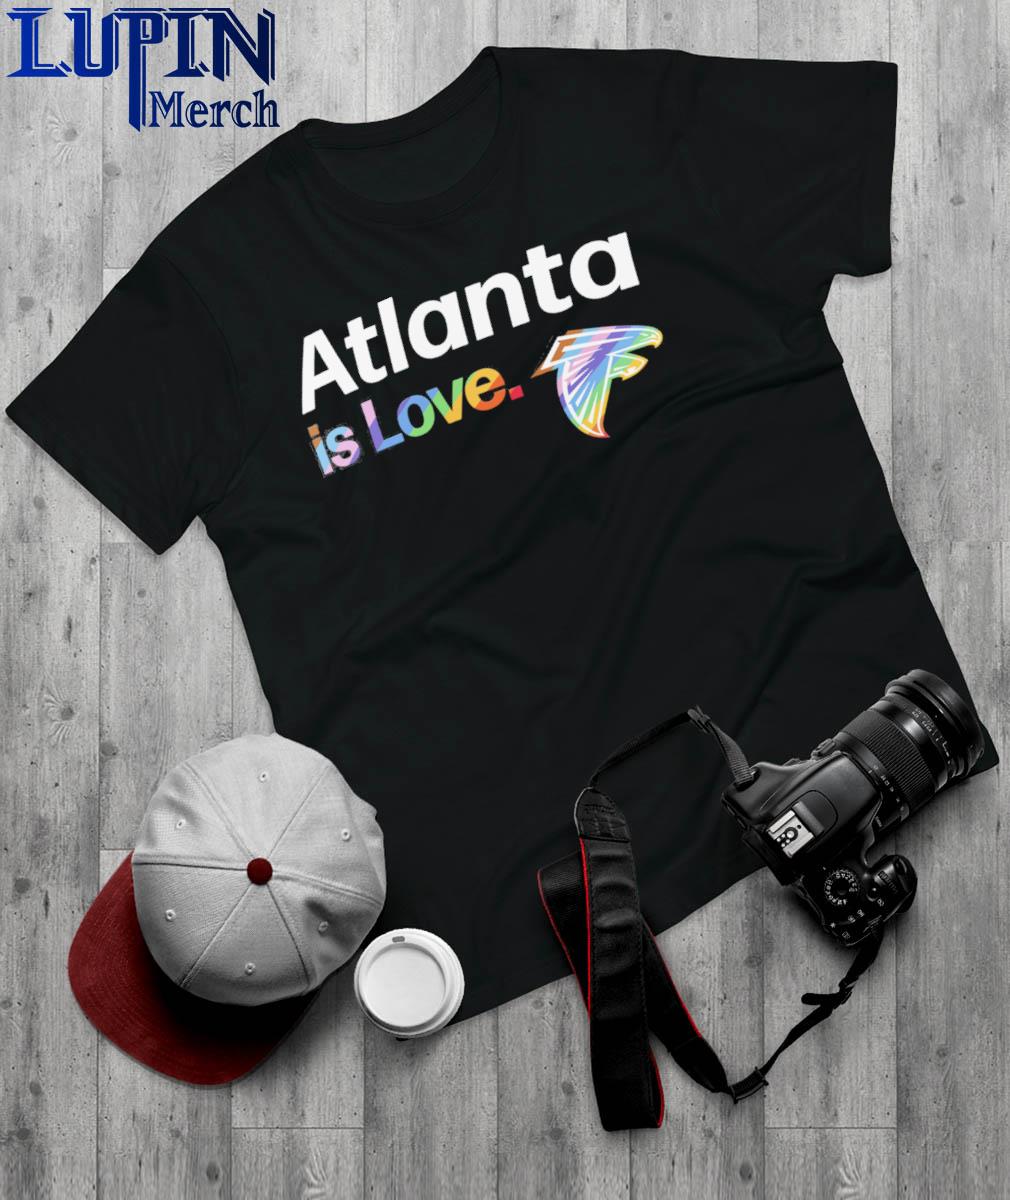 Atlanta Braves is love pride shirt, hoodie, sweater, long sleeve